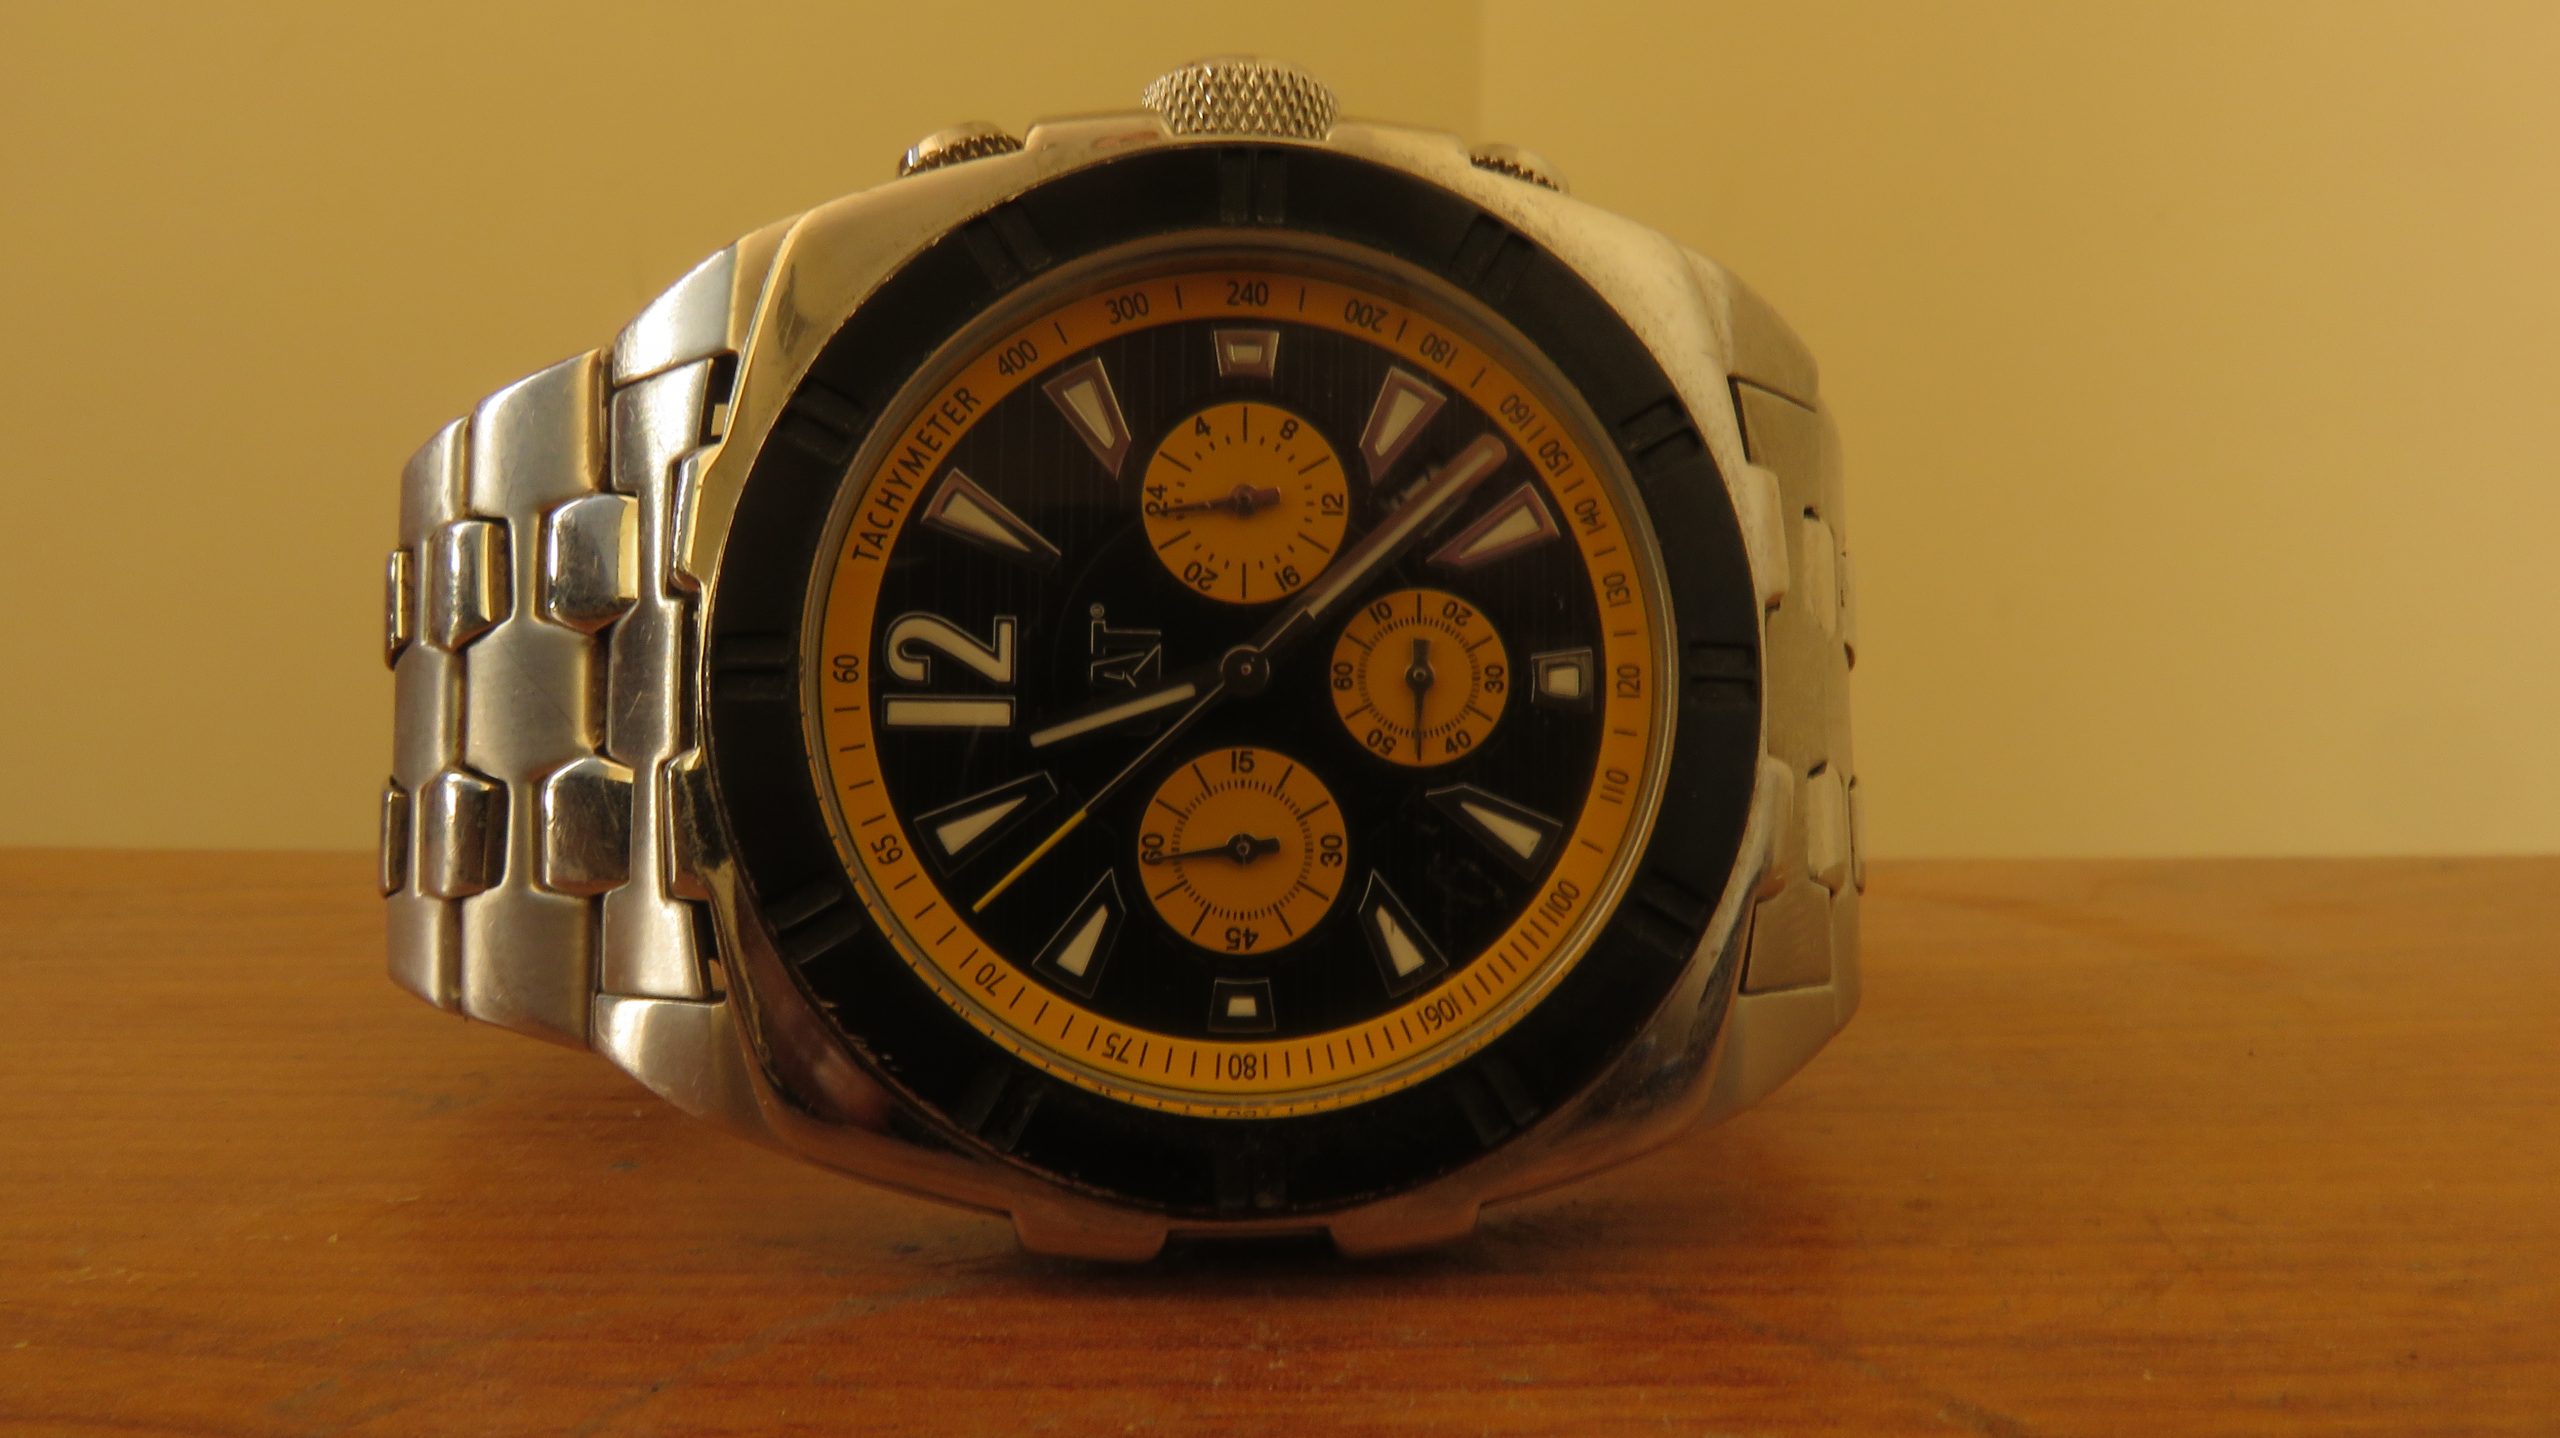 An analog wristwatch